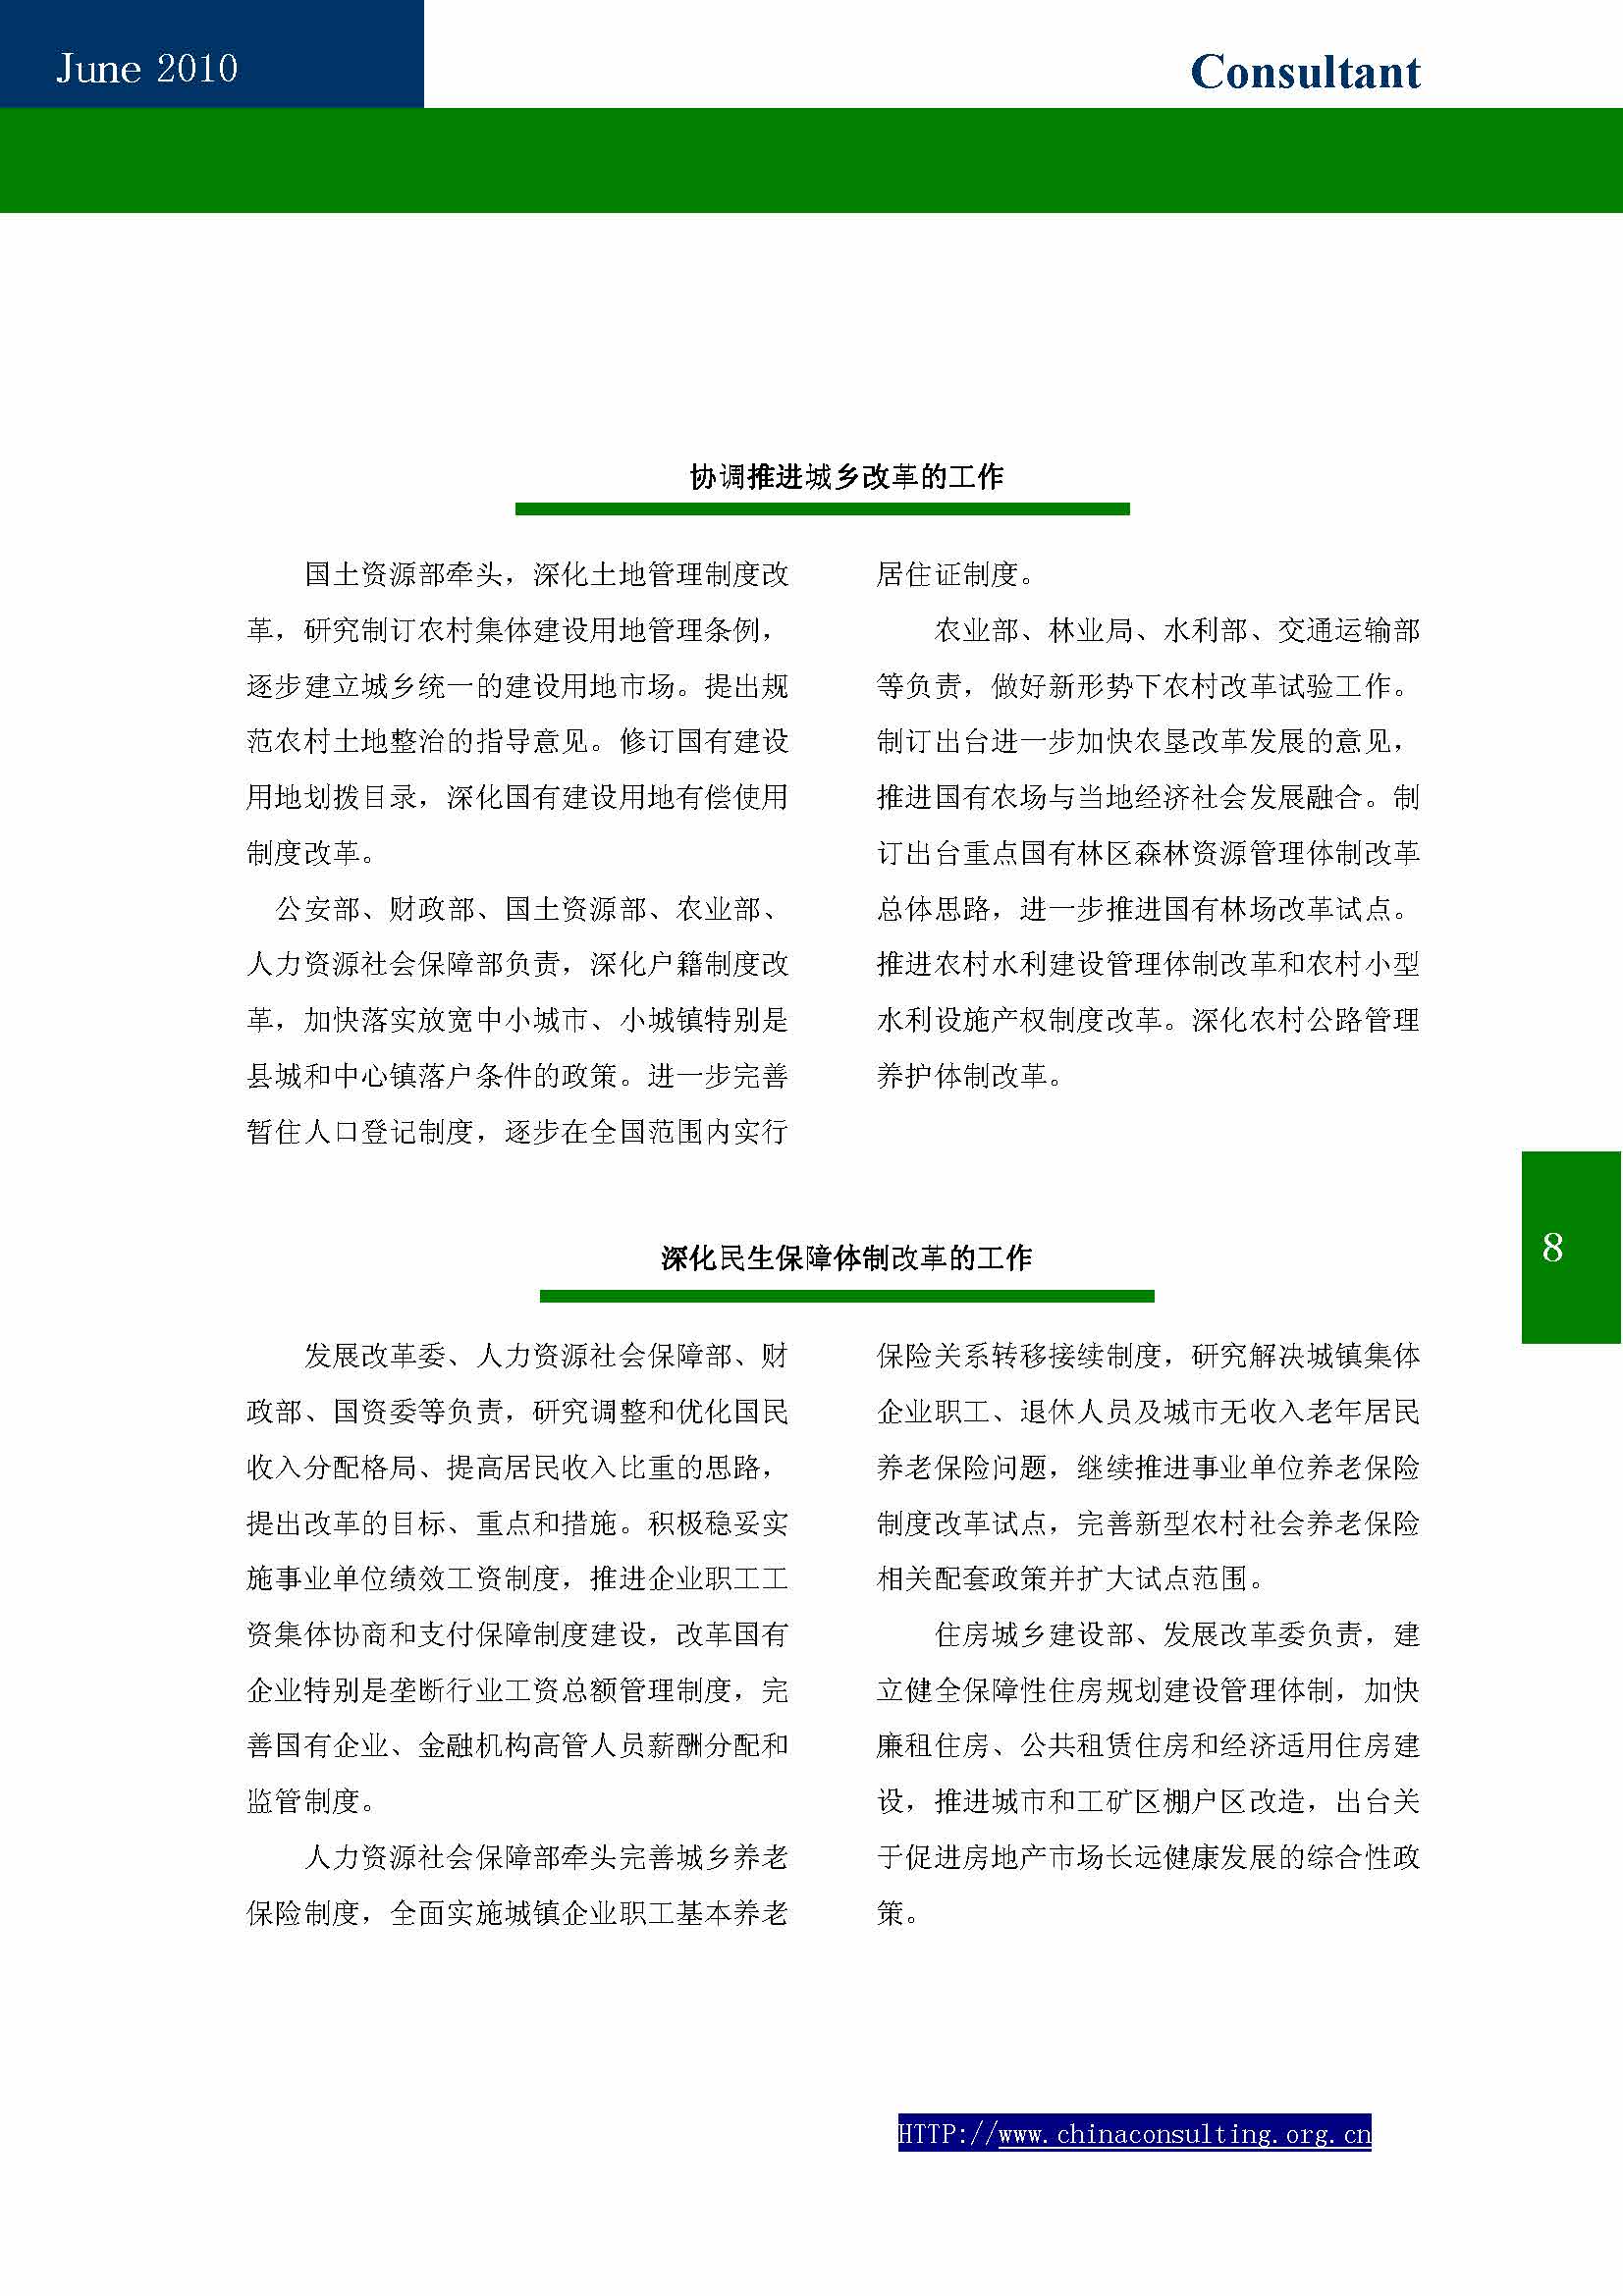 10中国科技咨询协会第十期会刊_页面_10.jpg